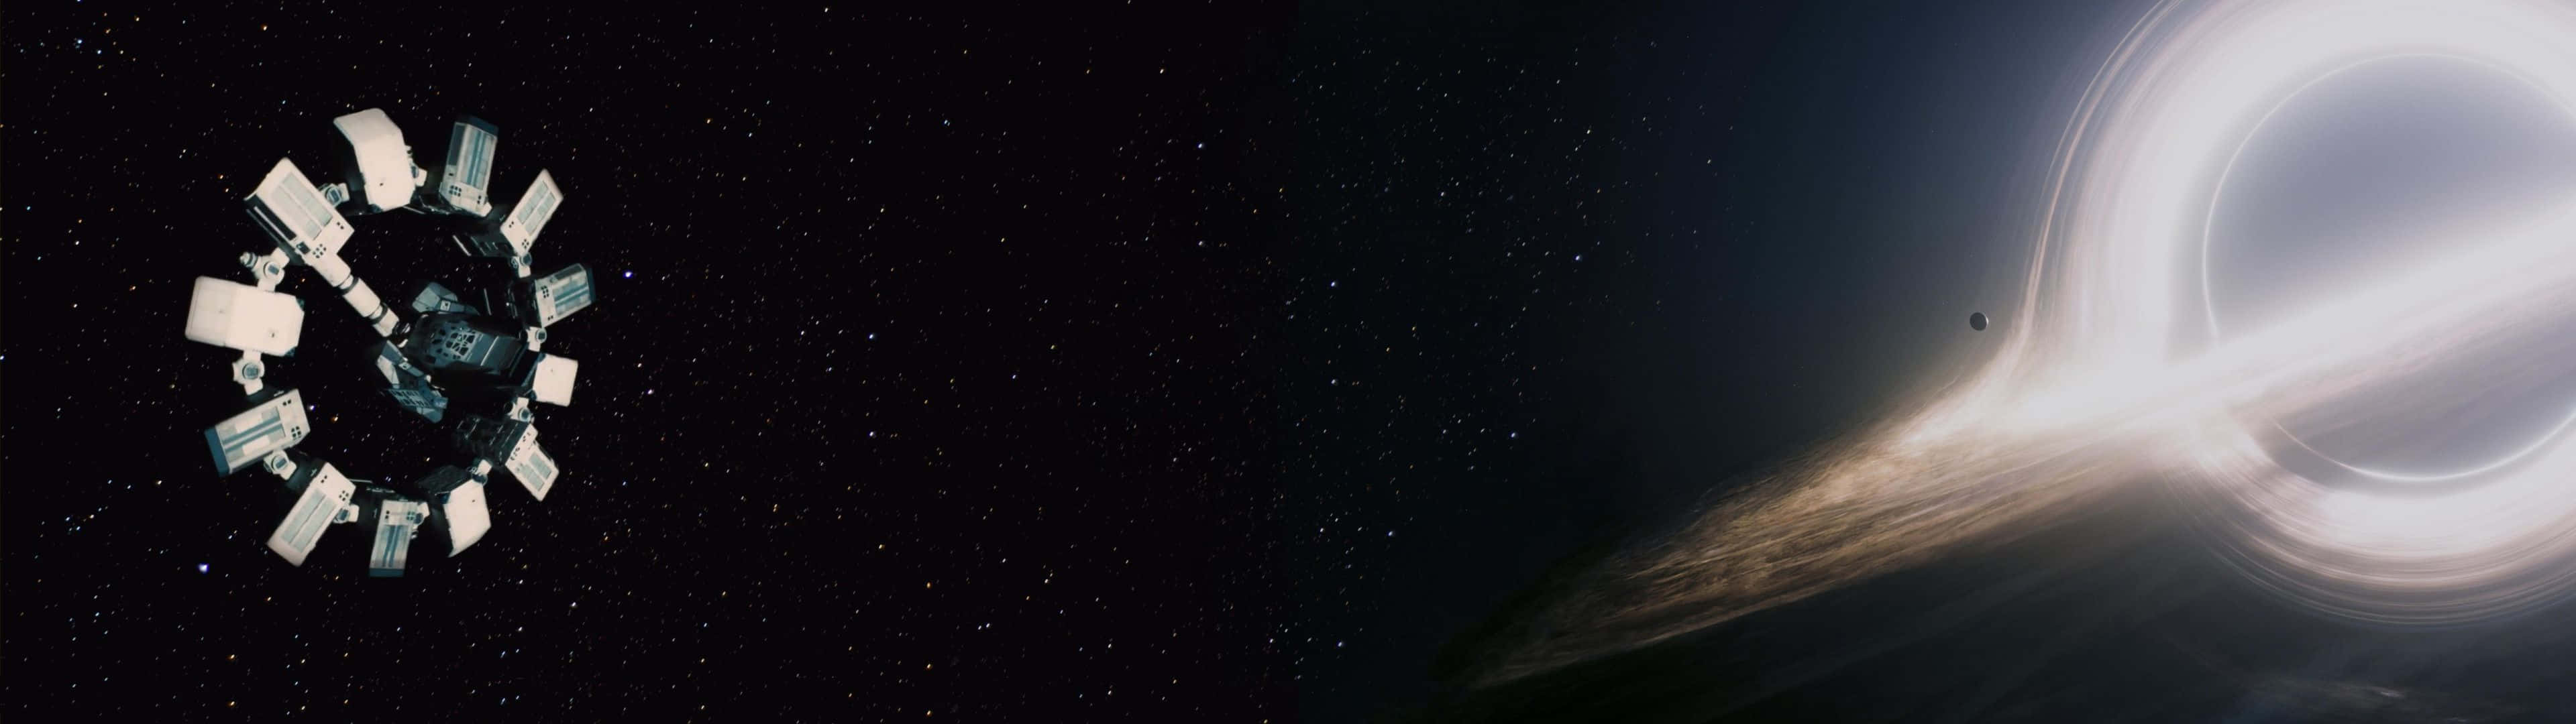 Billede et supermasst black hul i centrum af interstellare. Wallpaper